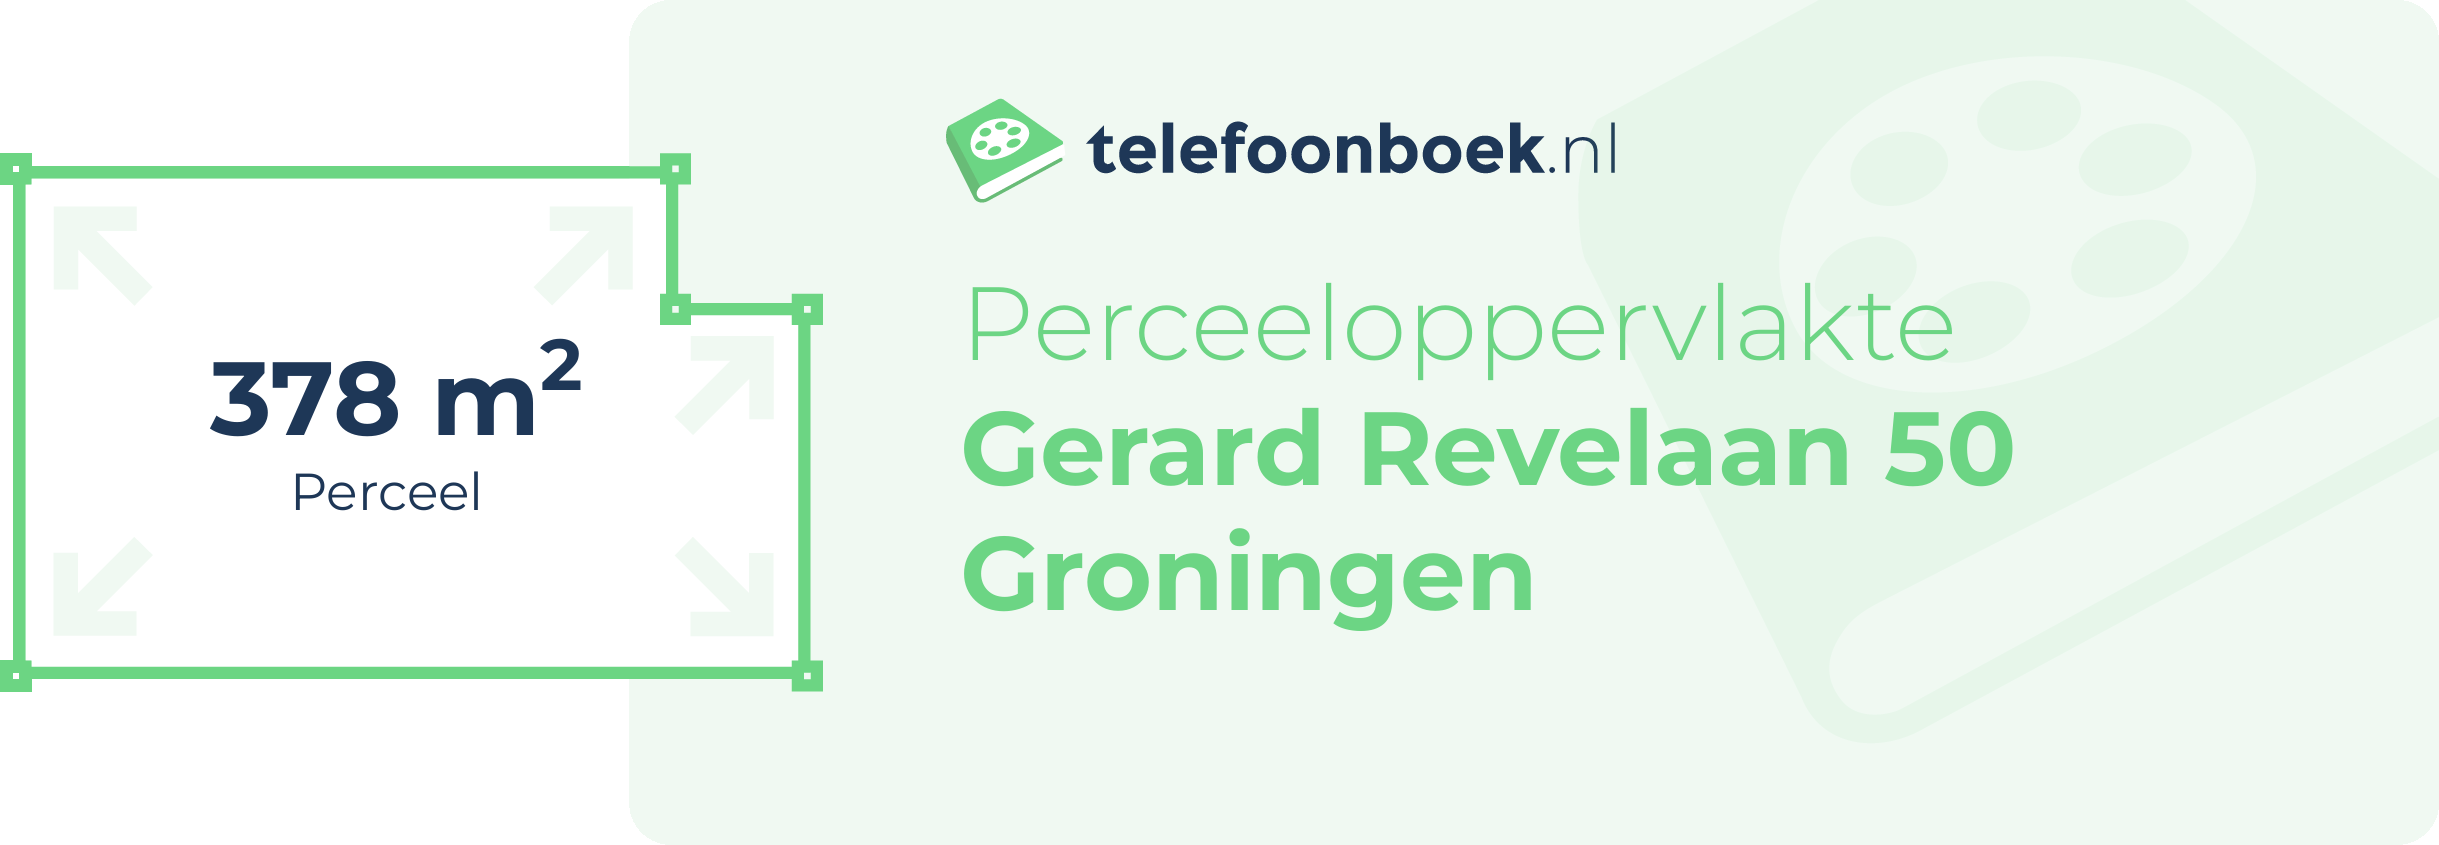 Perceeloppervlakte Gerard Revelaan 50 Groningen